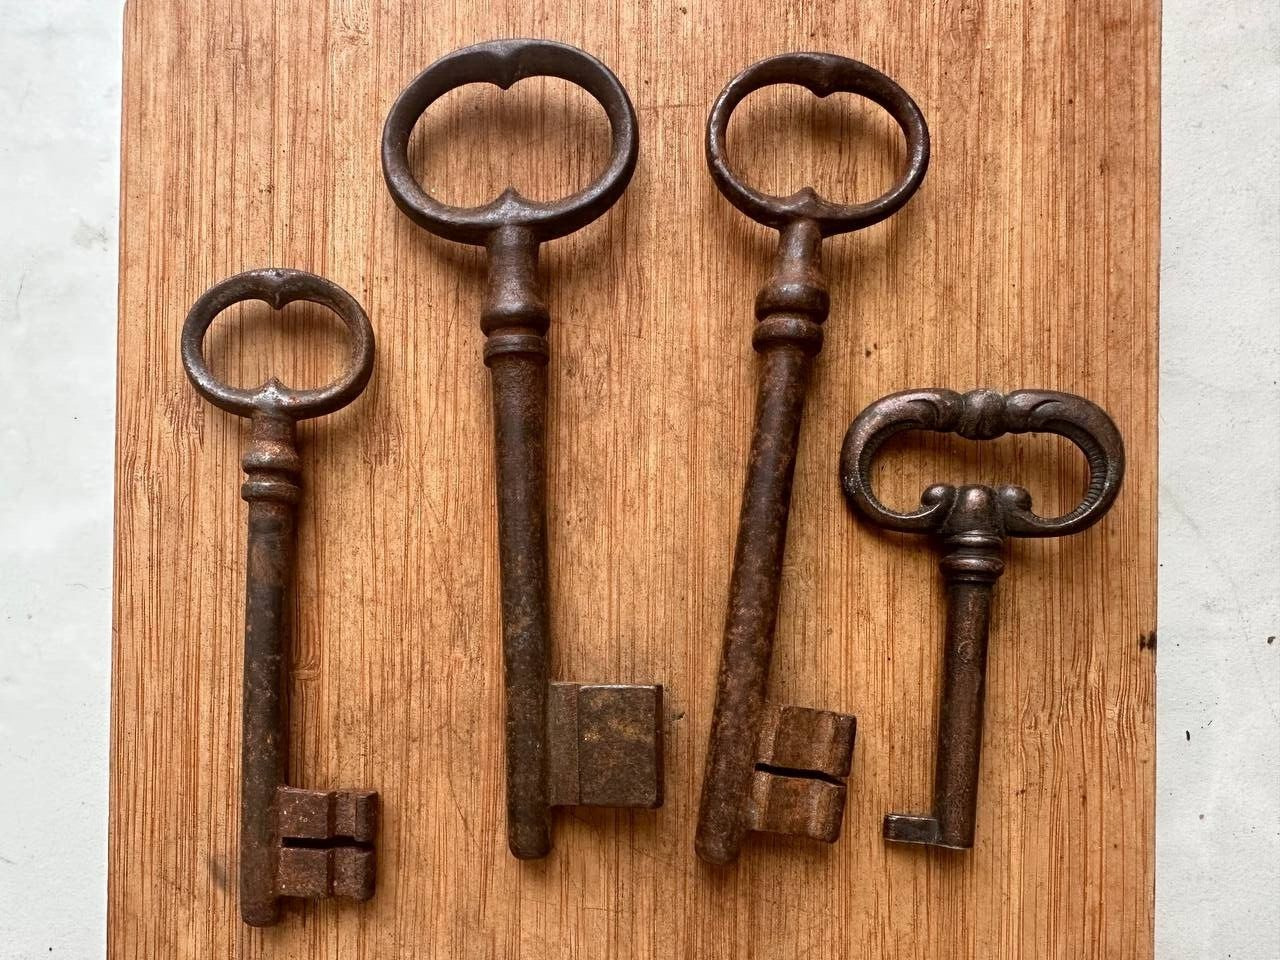 Antique antique keys 19-20 centuries Rare